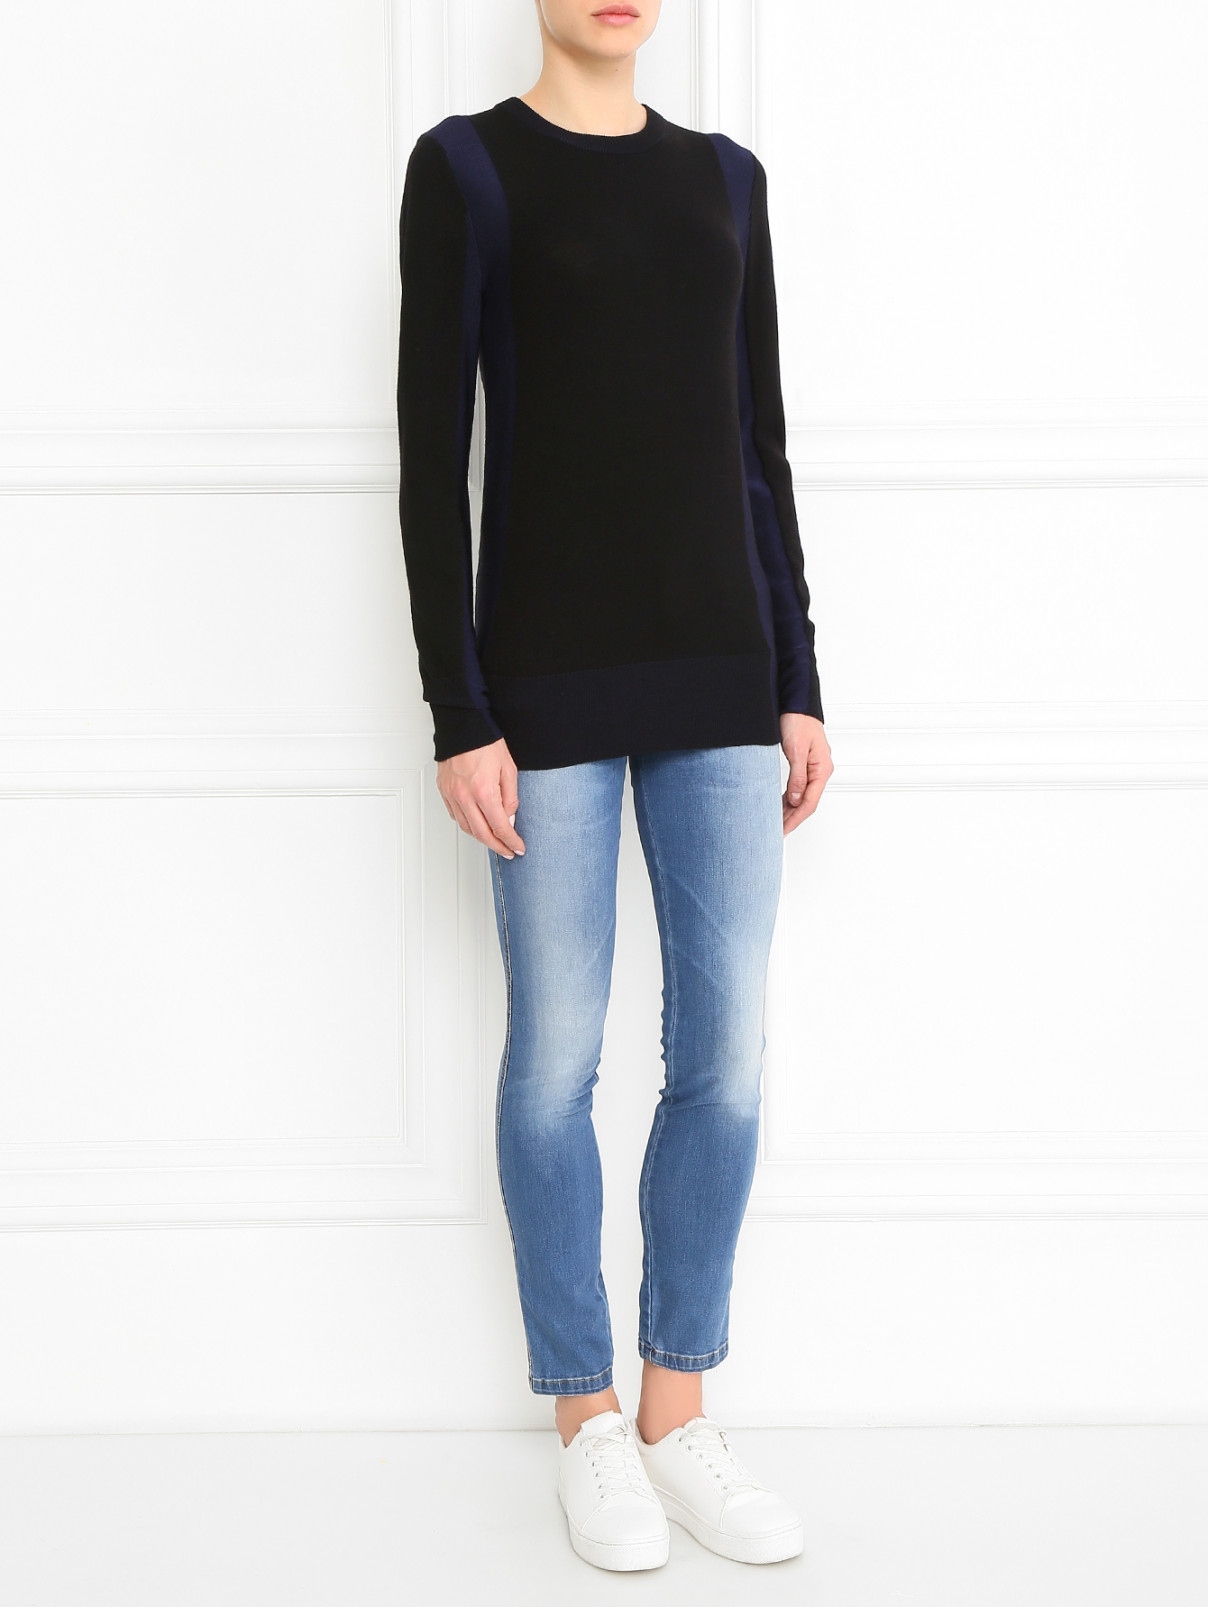 Джемпер с длинным рукавом с контрастной вставкой DKNY  –  Модель Общий вид  – Цвет:  Черный